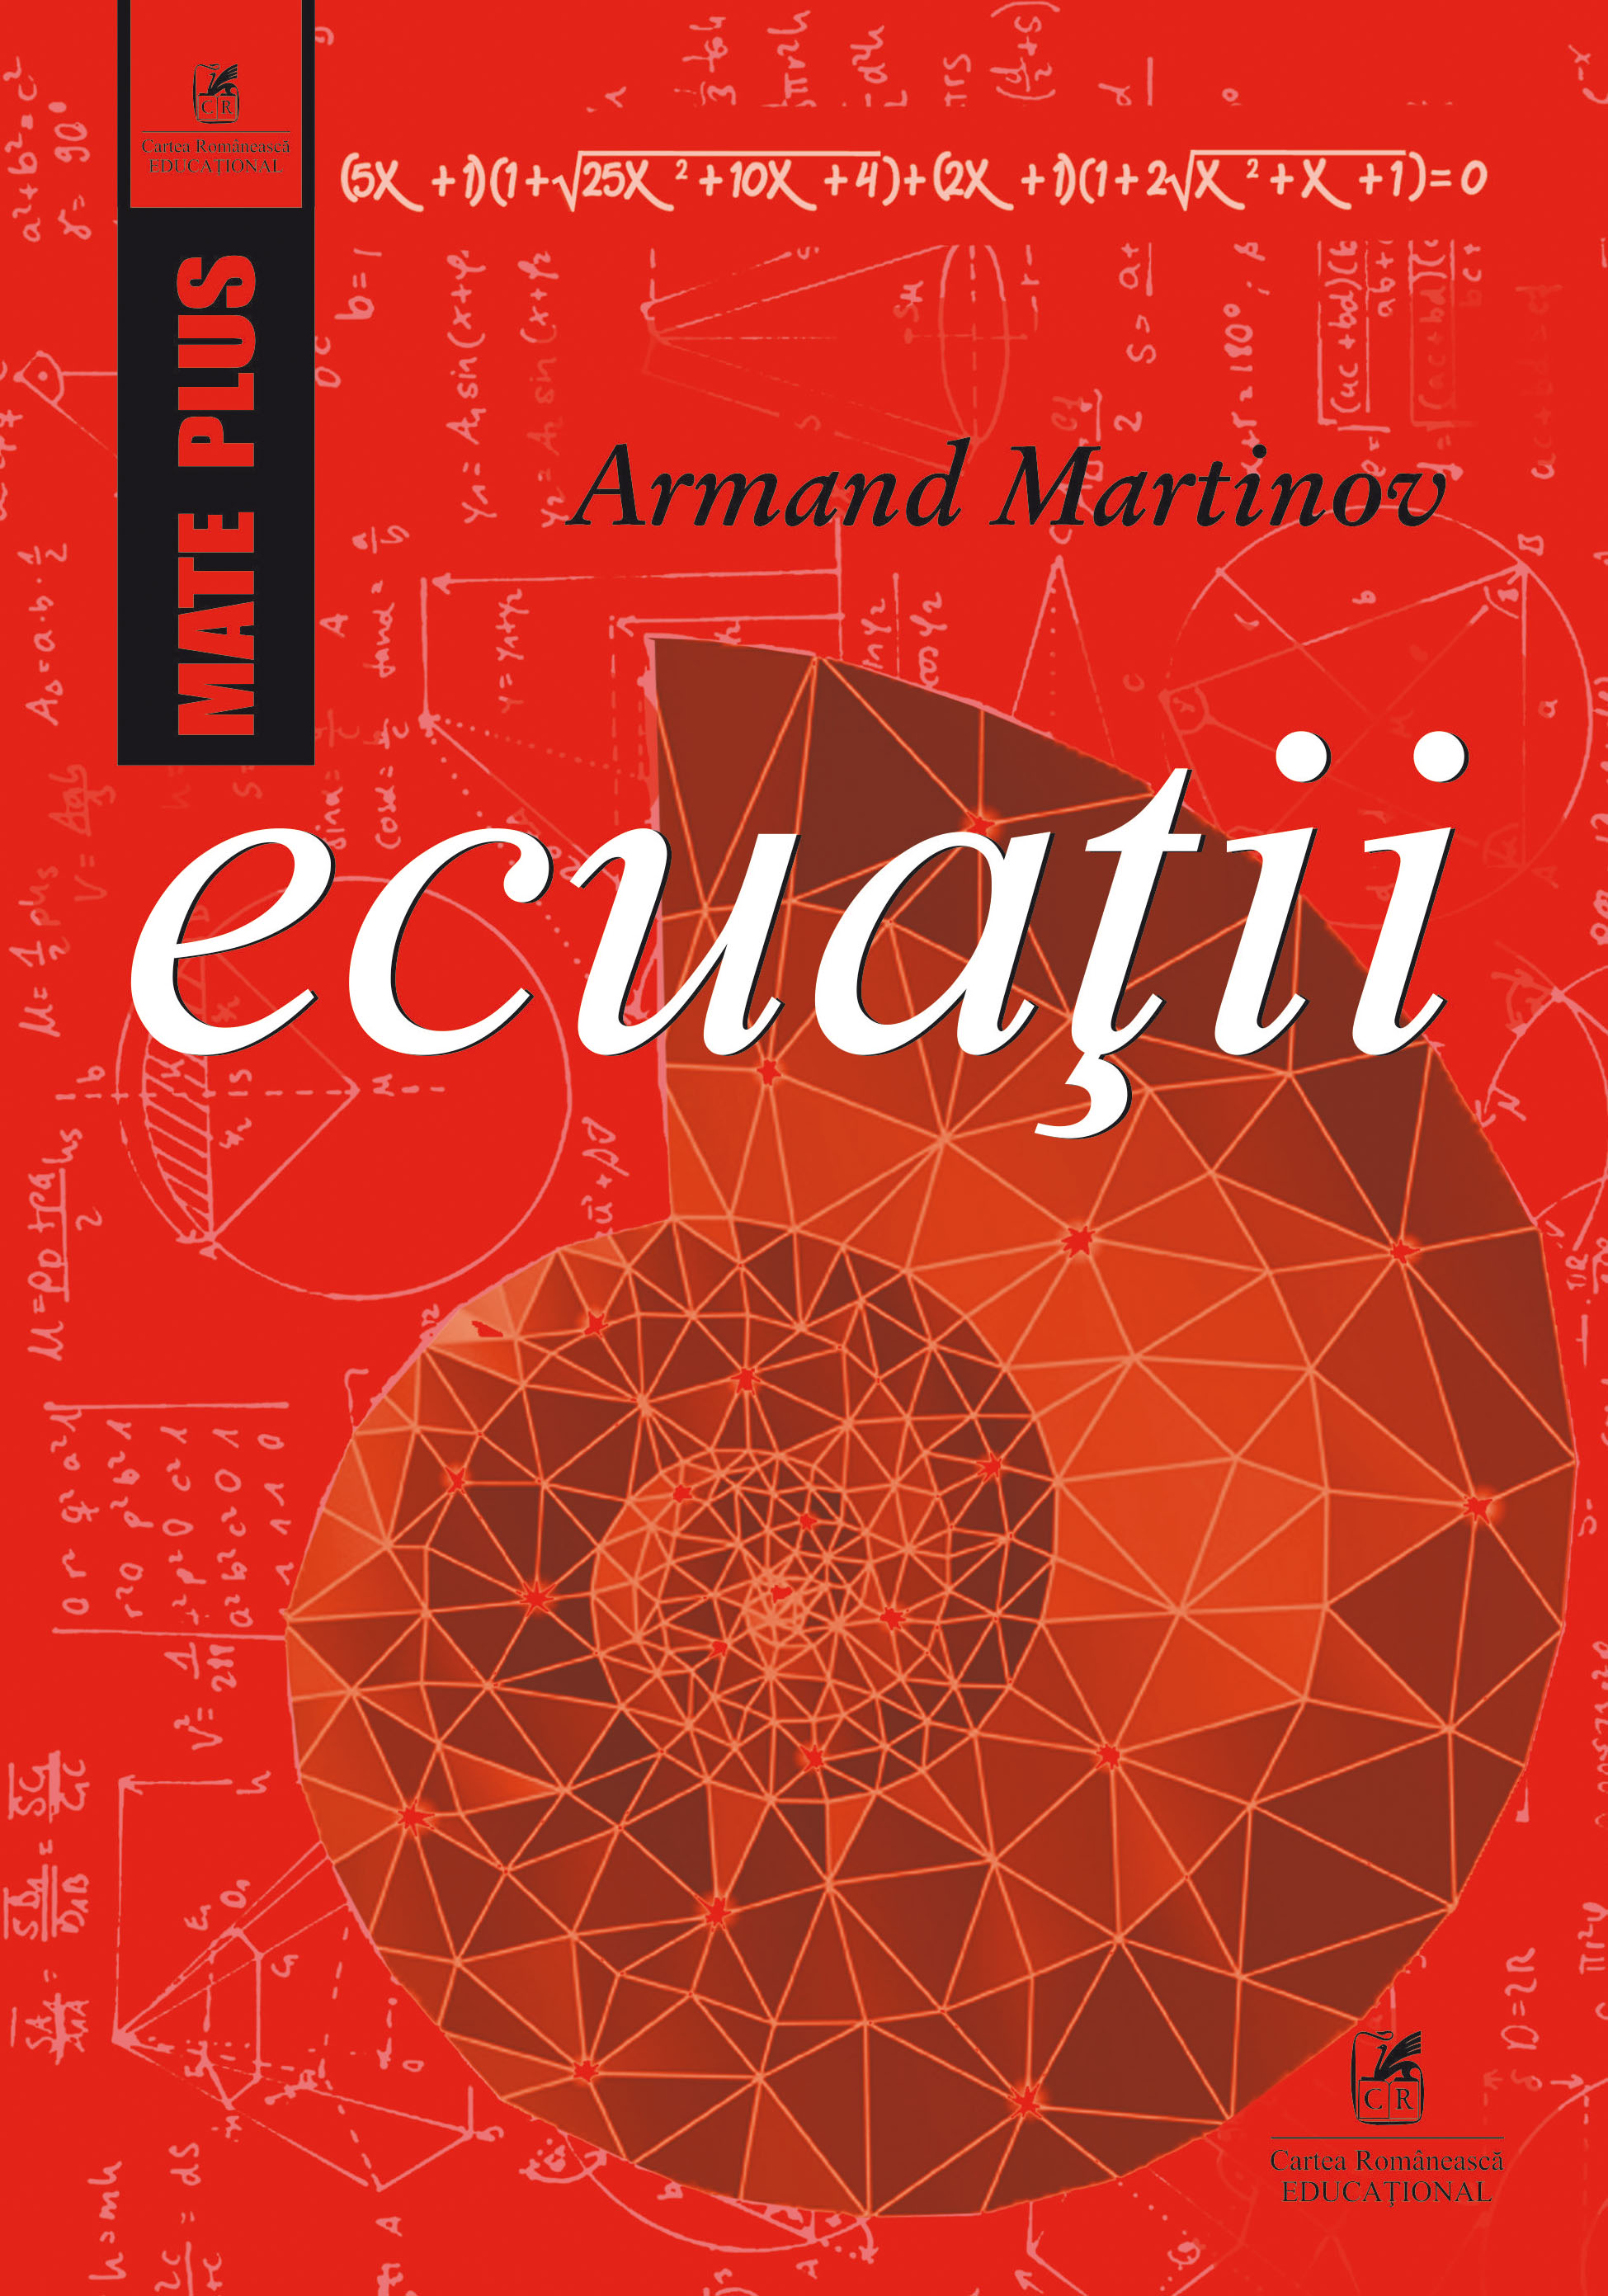 Ecuatii - Armand Martinov